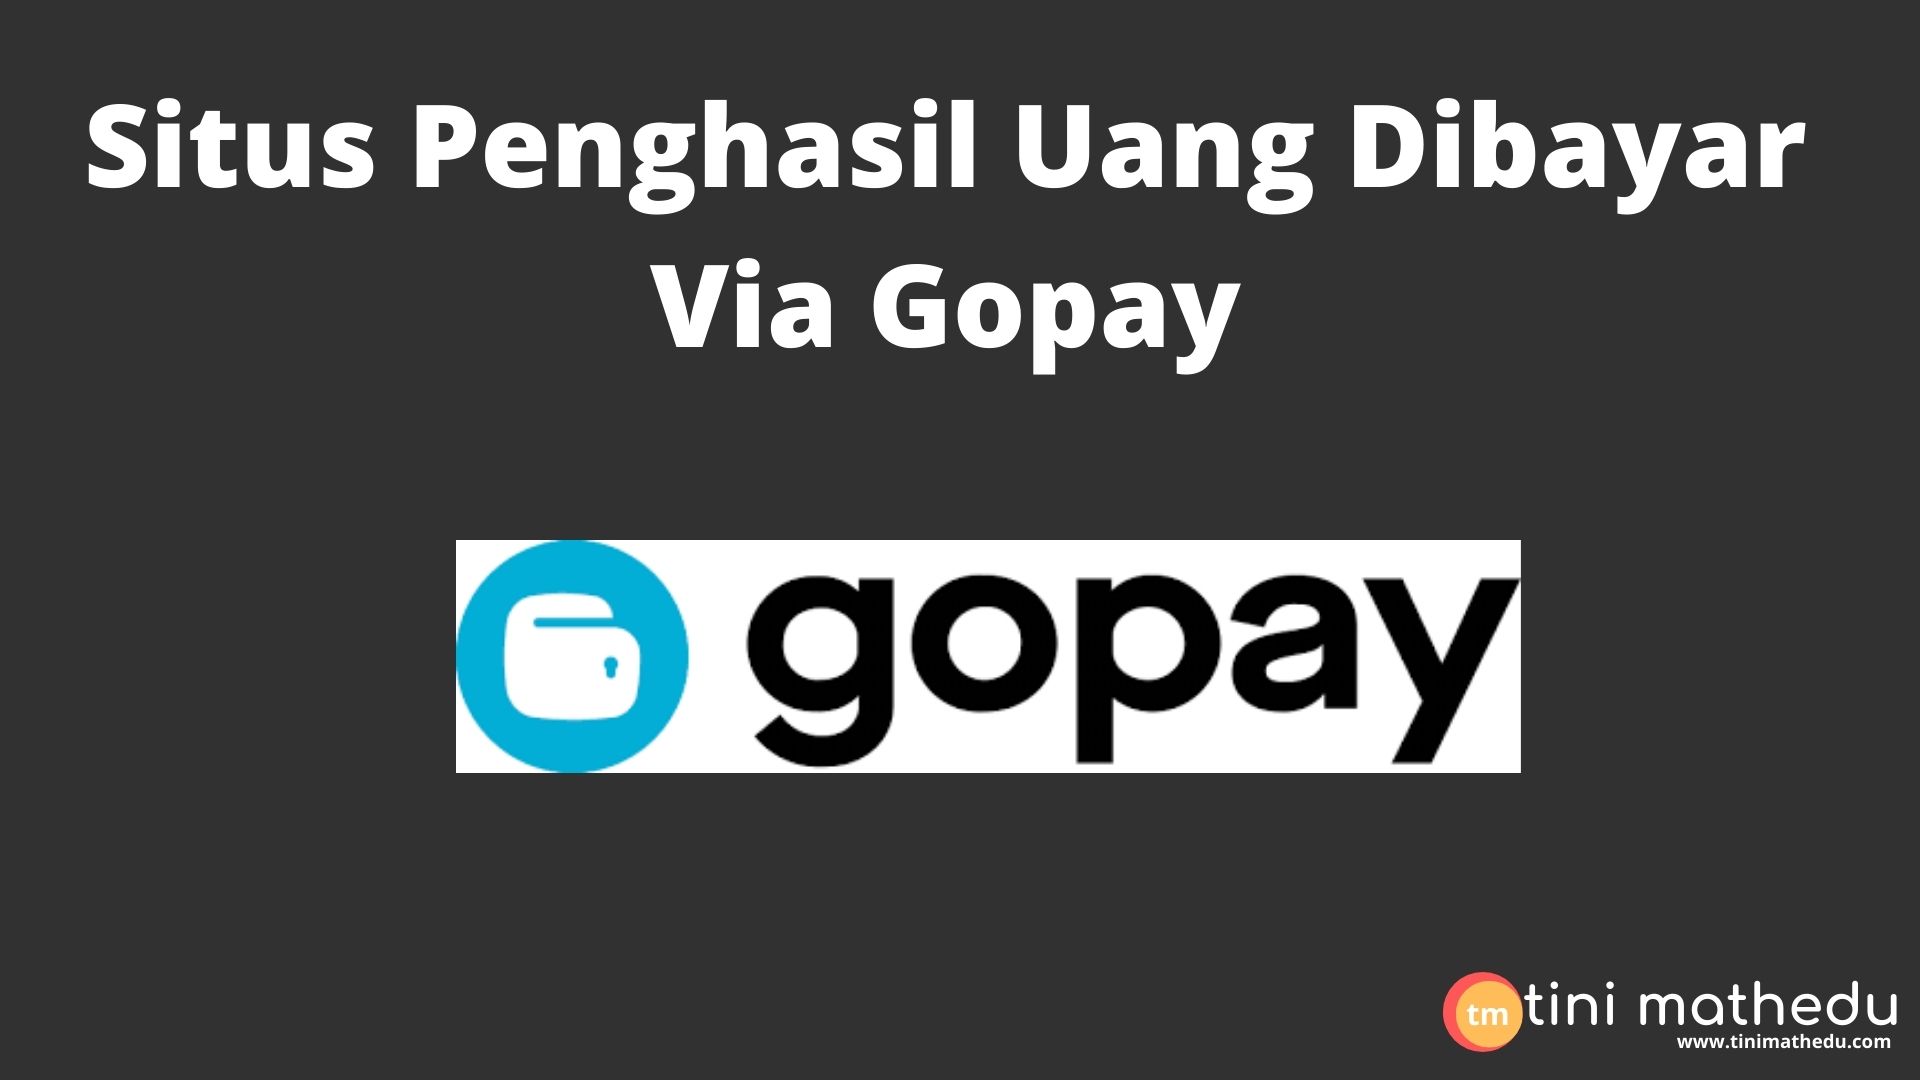 Situs Penghasil Uang Dibayar Via Gopay